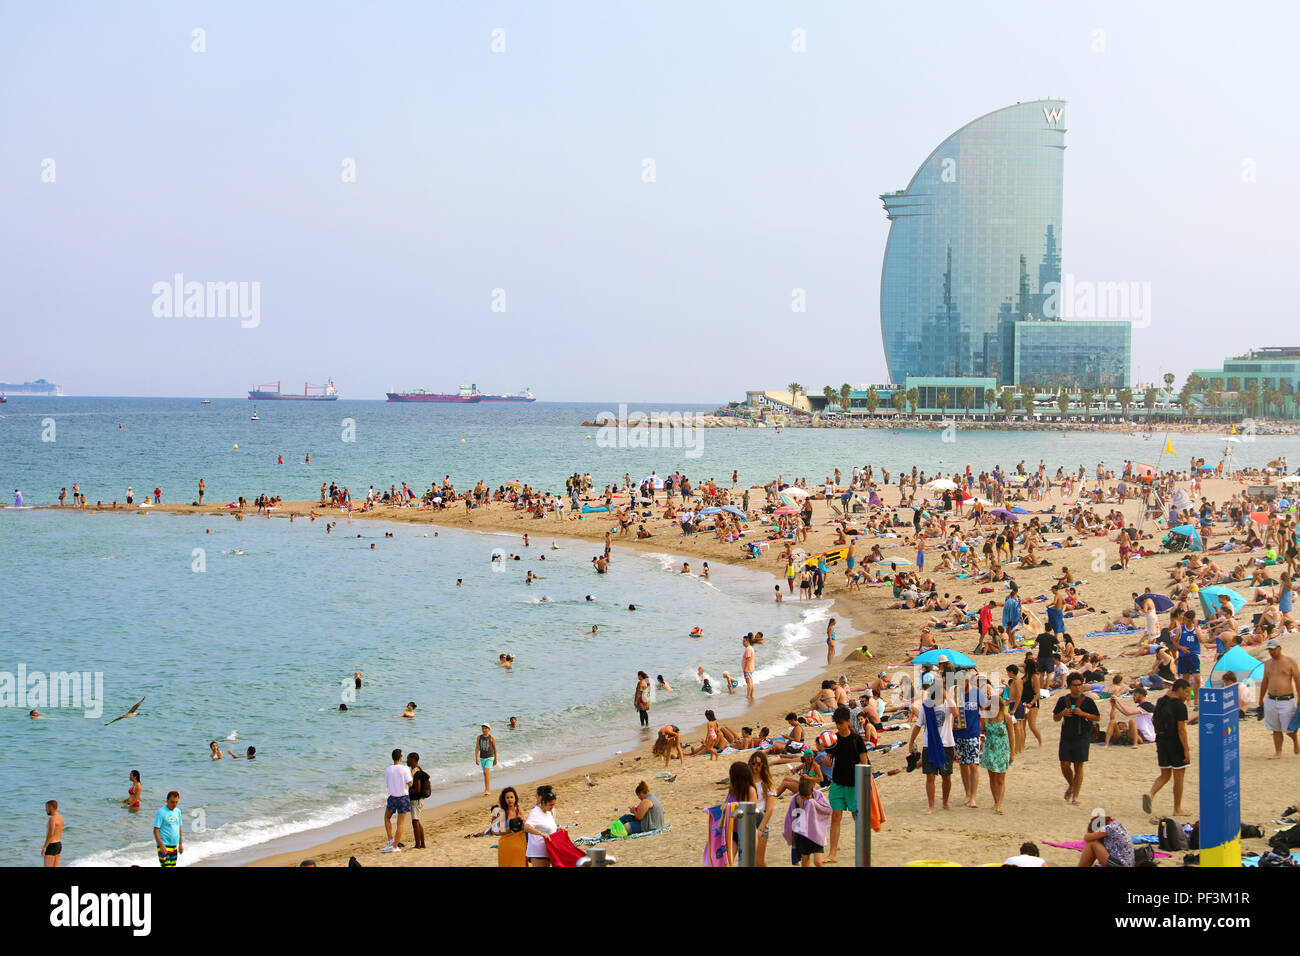 BARCELONA, SPANIEN - 11. JULI 2018: herrliche Aussicht auf den Strand von Barceloneta mit Menschen in sonniger Tag in Barcelona und W Hotel auf einem Hintergrund Catalon Stockfoto